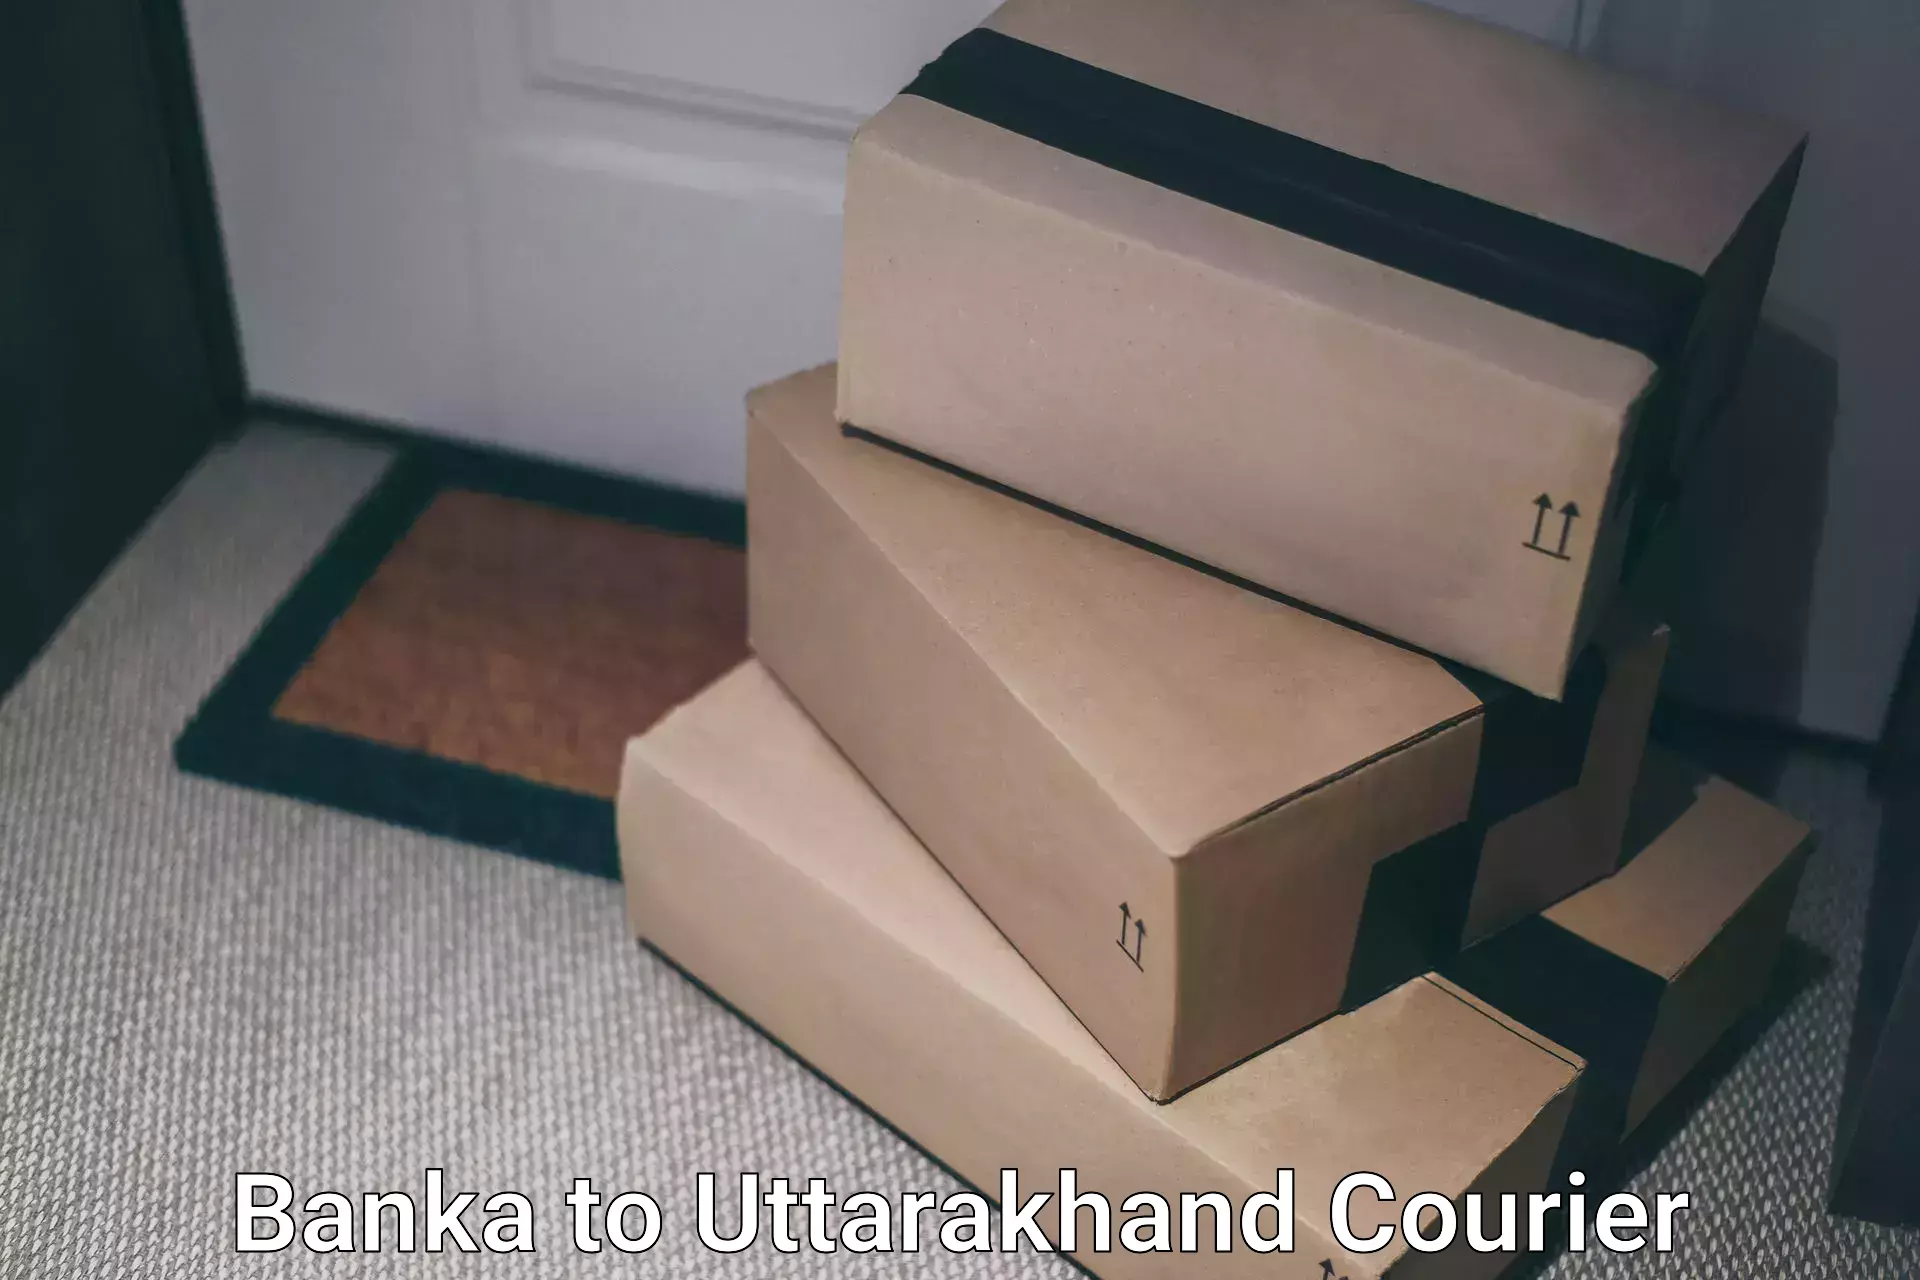 Subscription-based courier Banka to Joshimath